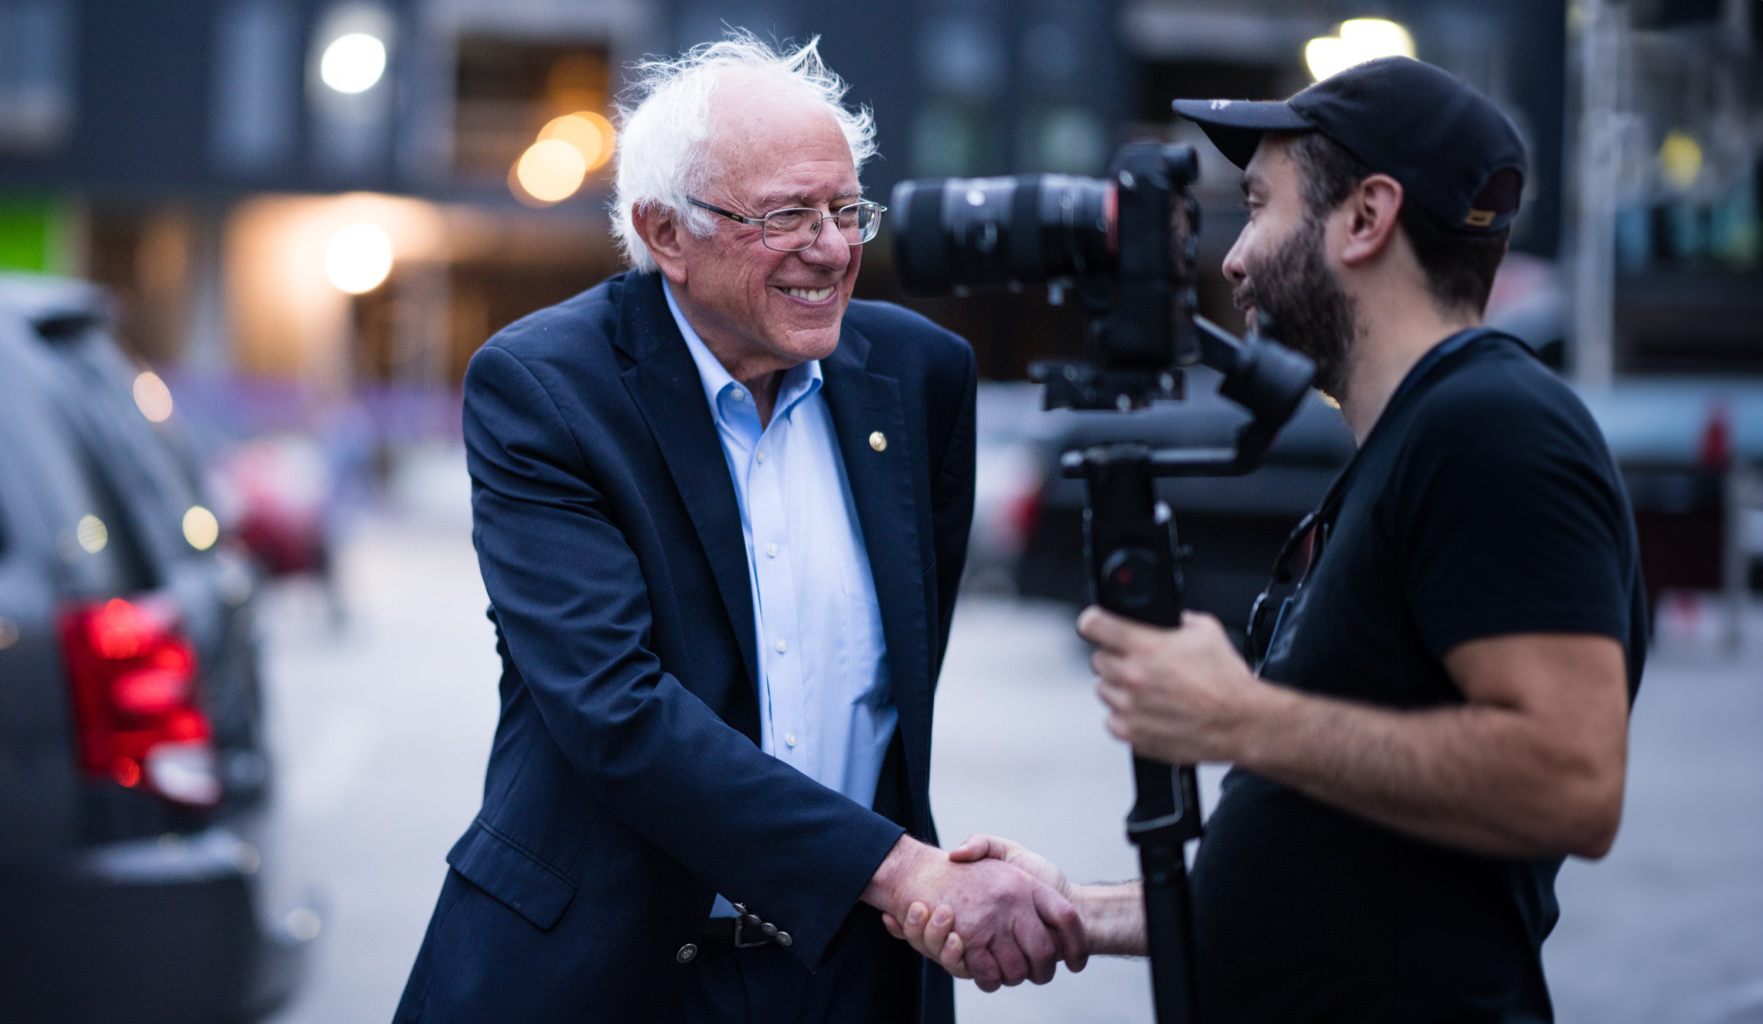 Bernie Sanders shaking hands